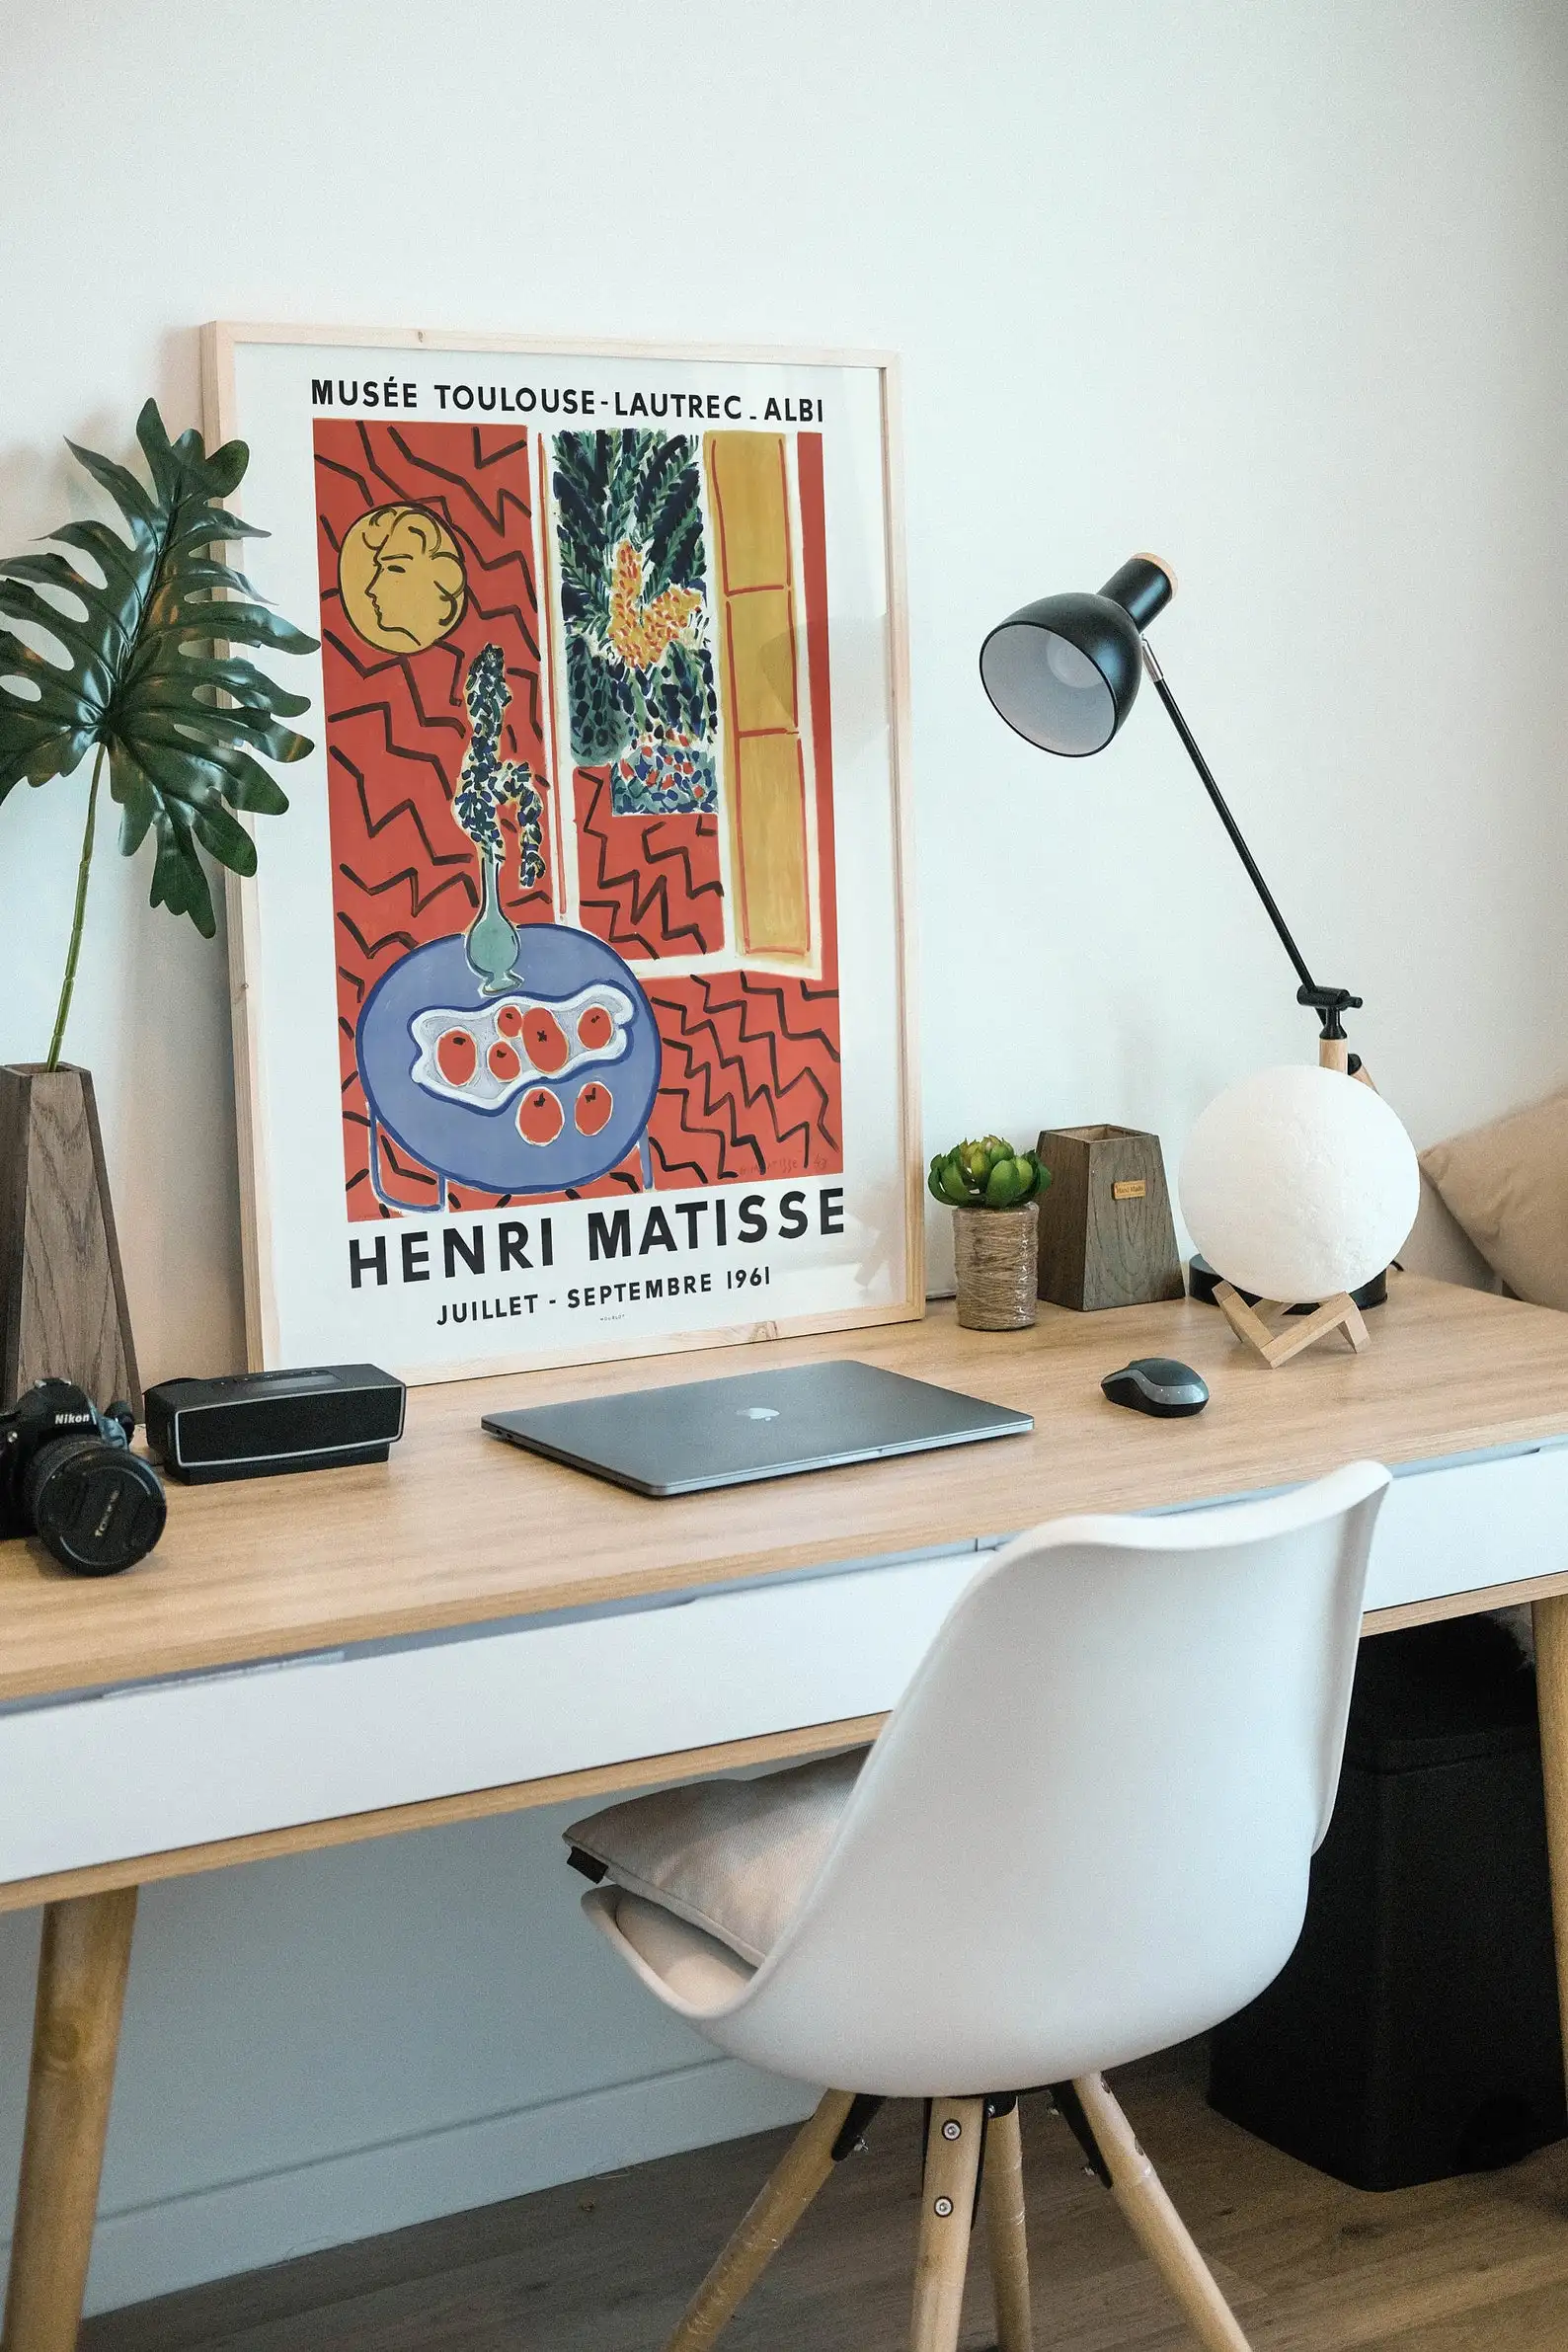 Постер Анри матиссе принт Матисса выставочный постер дешевое настенное